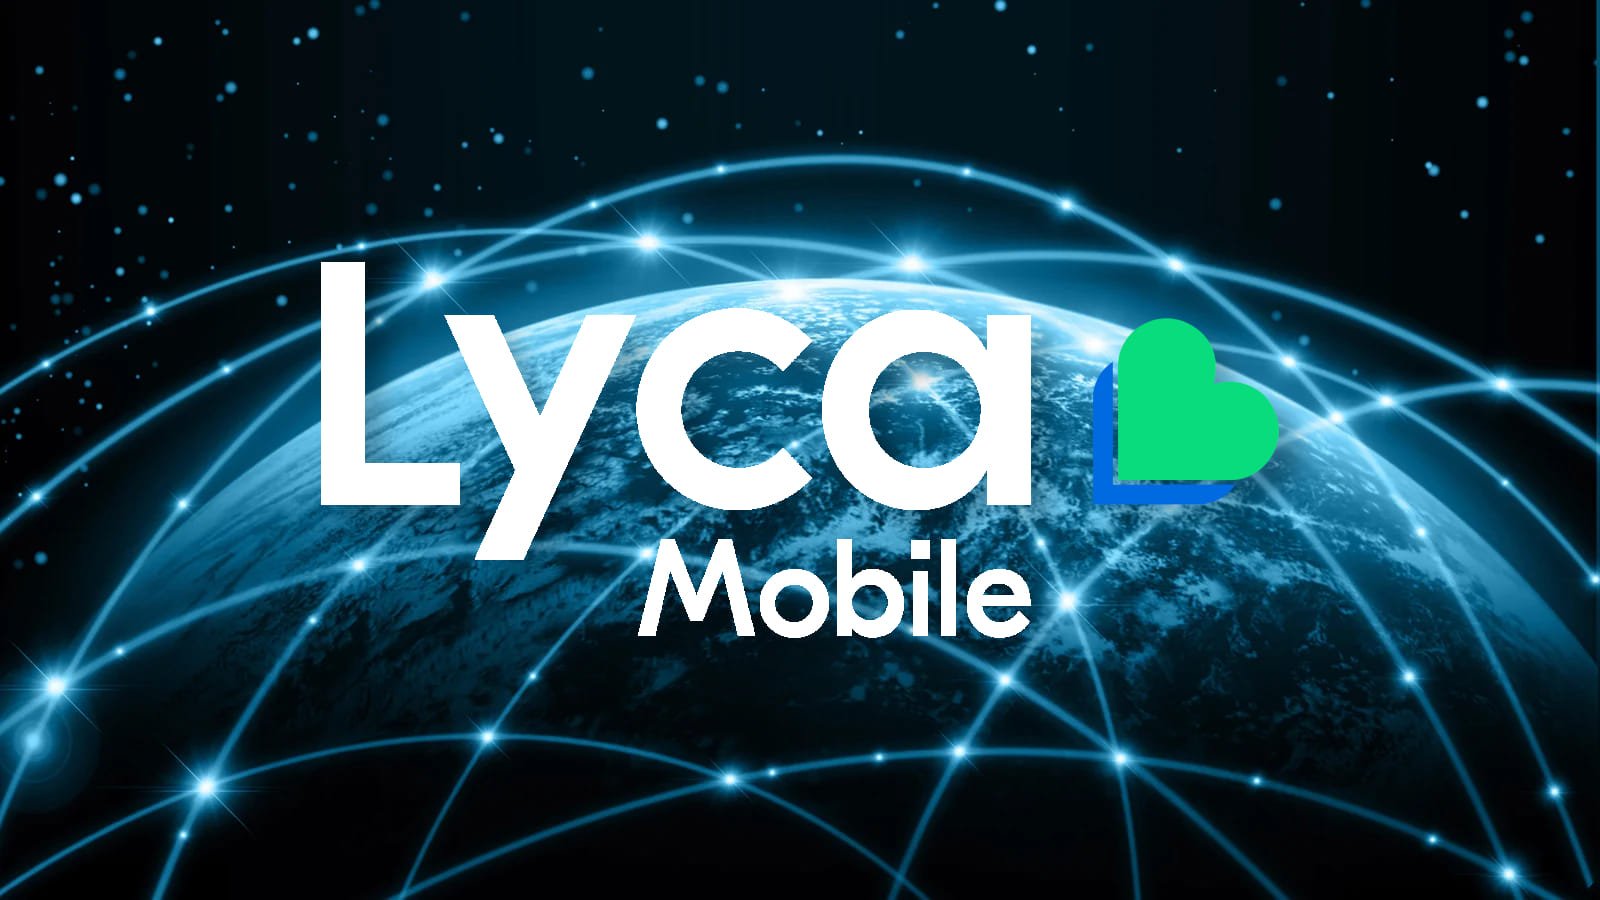 Lyca移动调查客户数据泄露后的网络攻击
